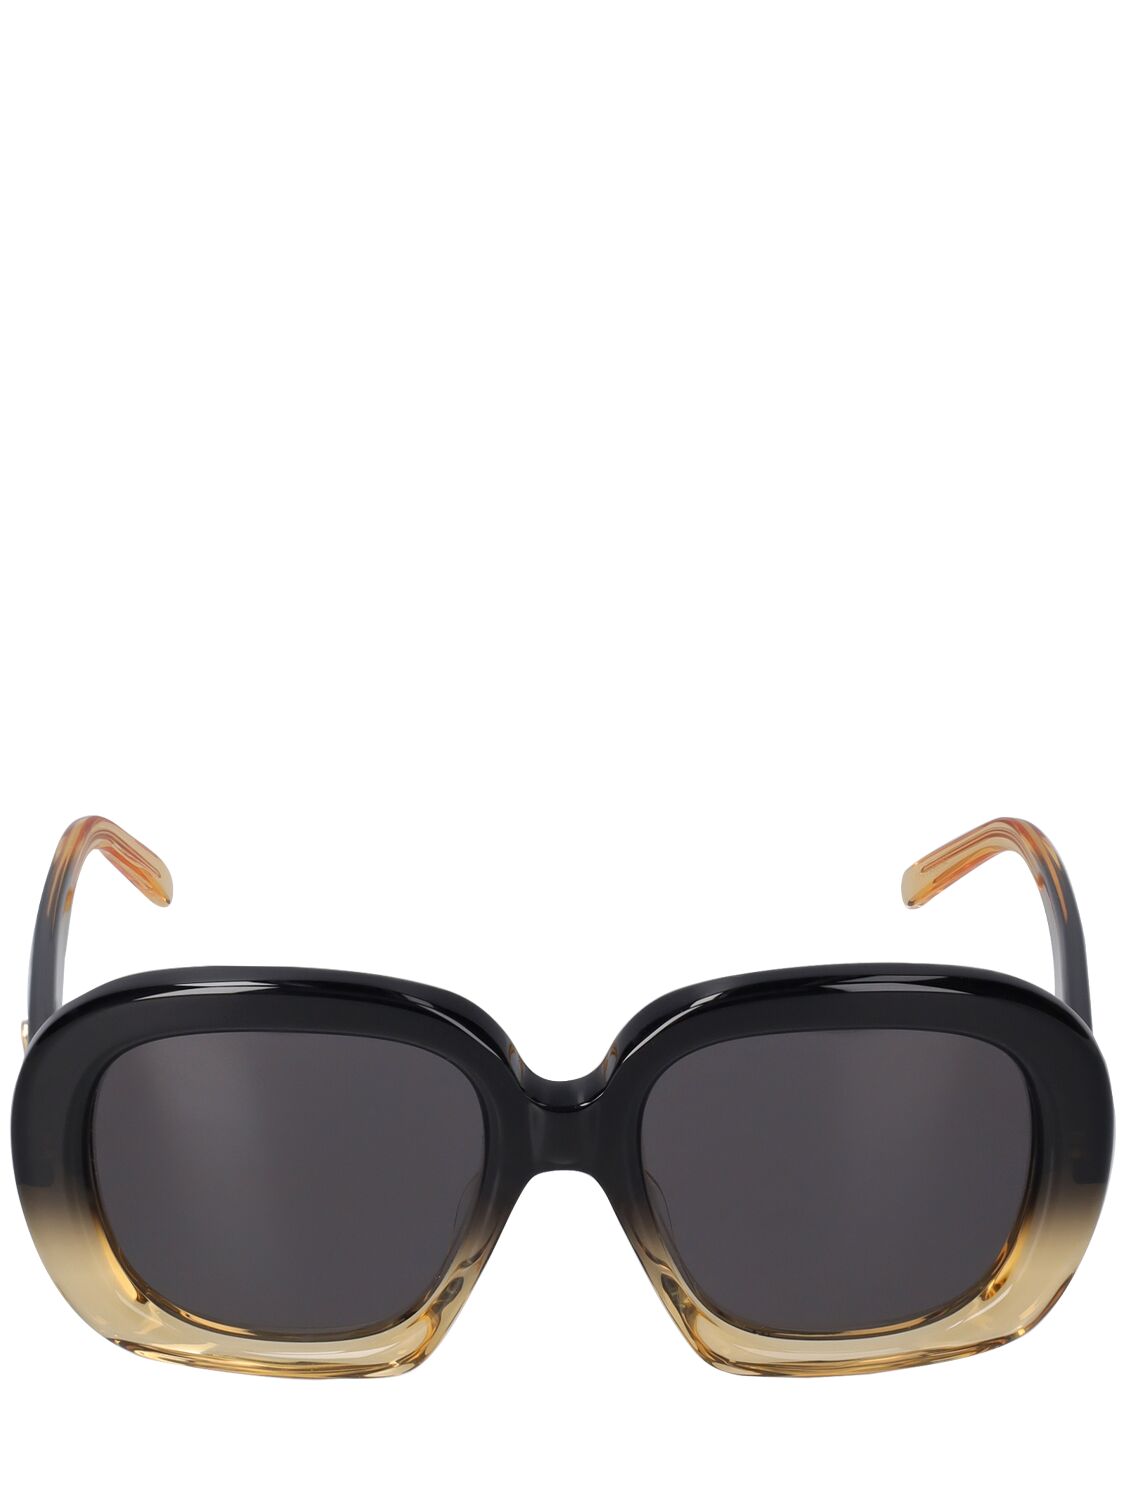 Image of Curvy Acetate Sunglasses